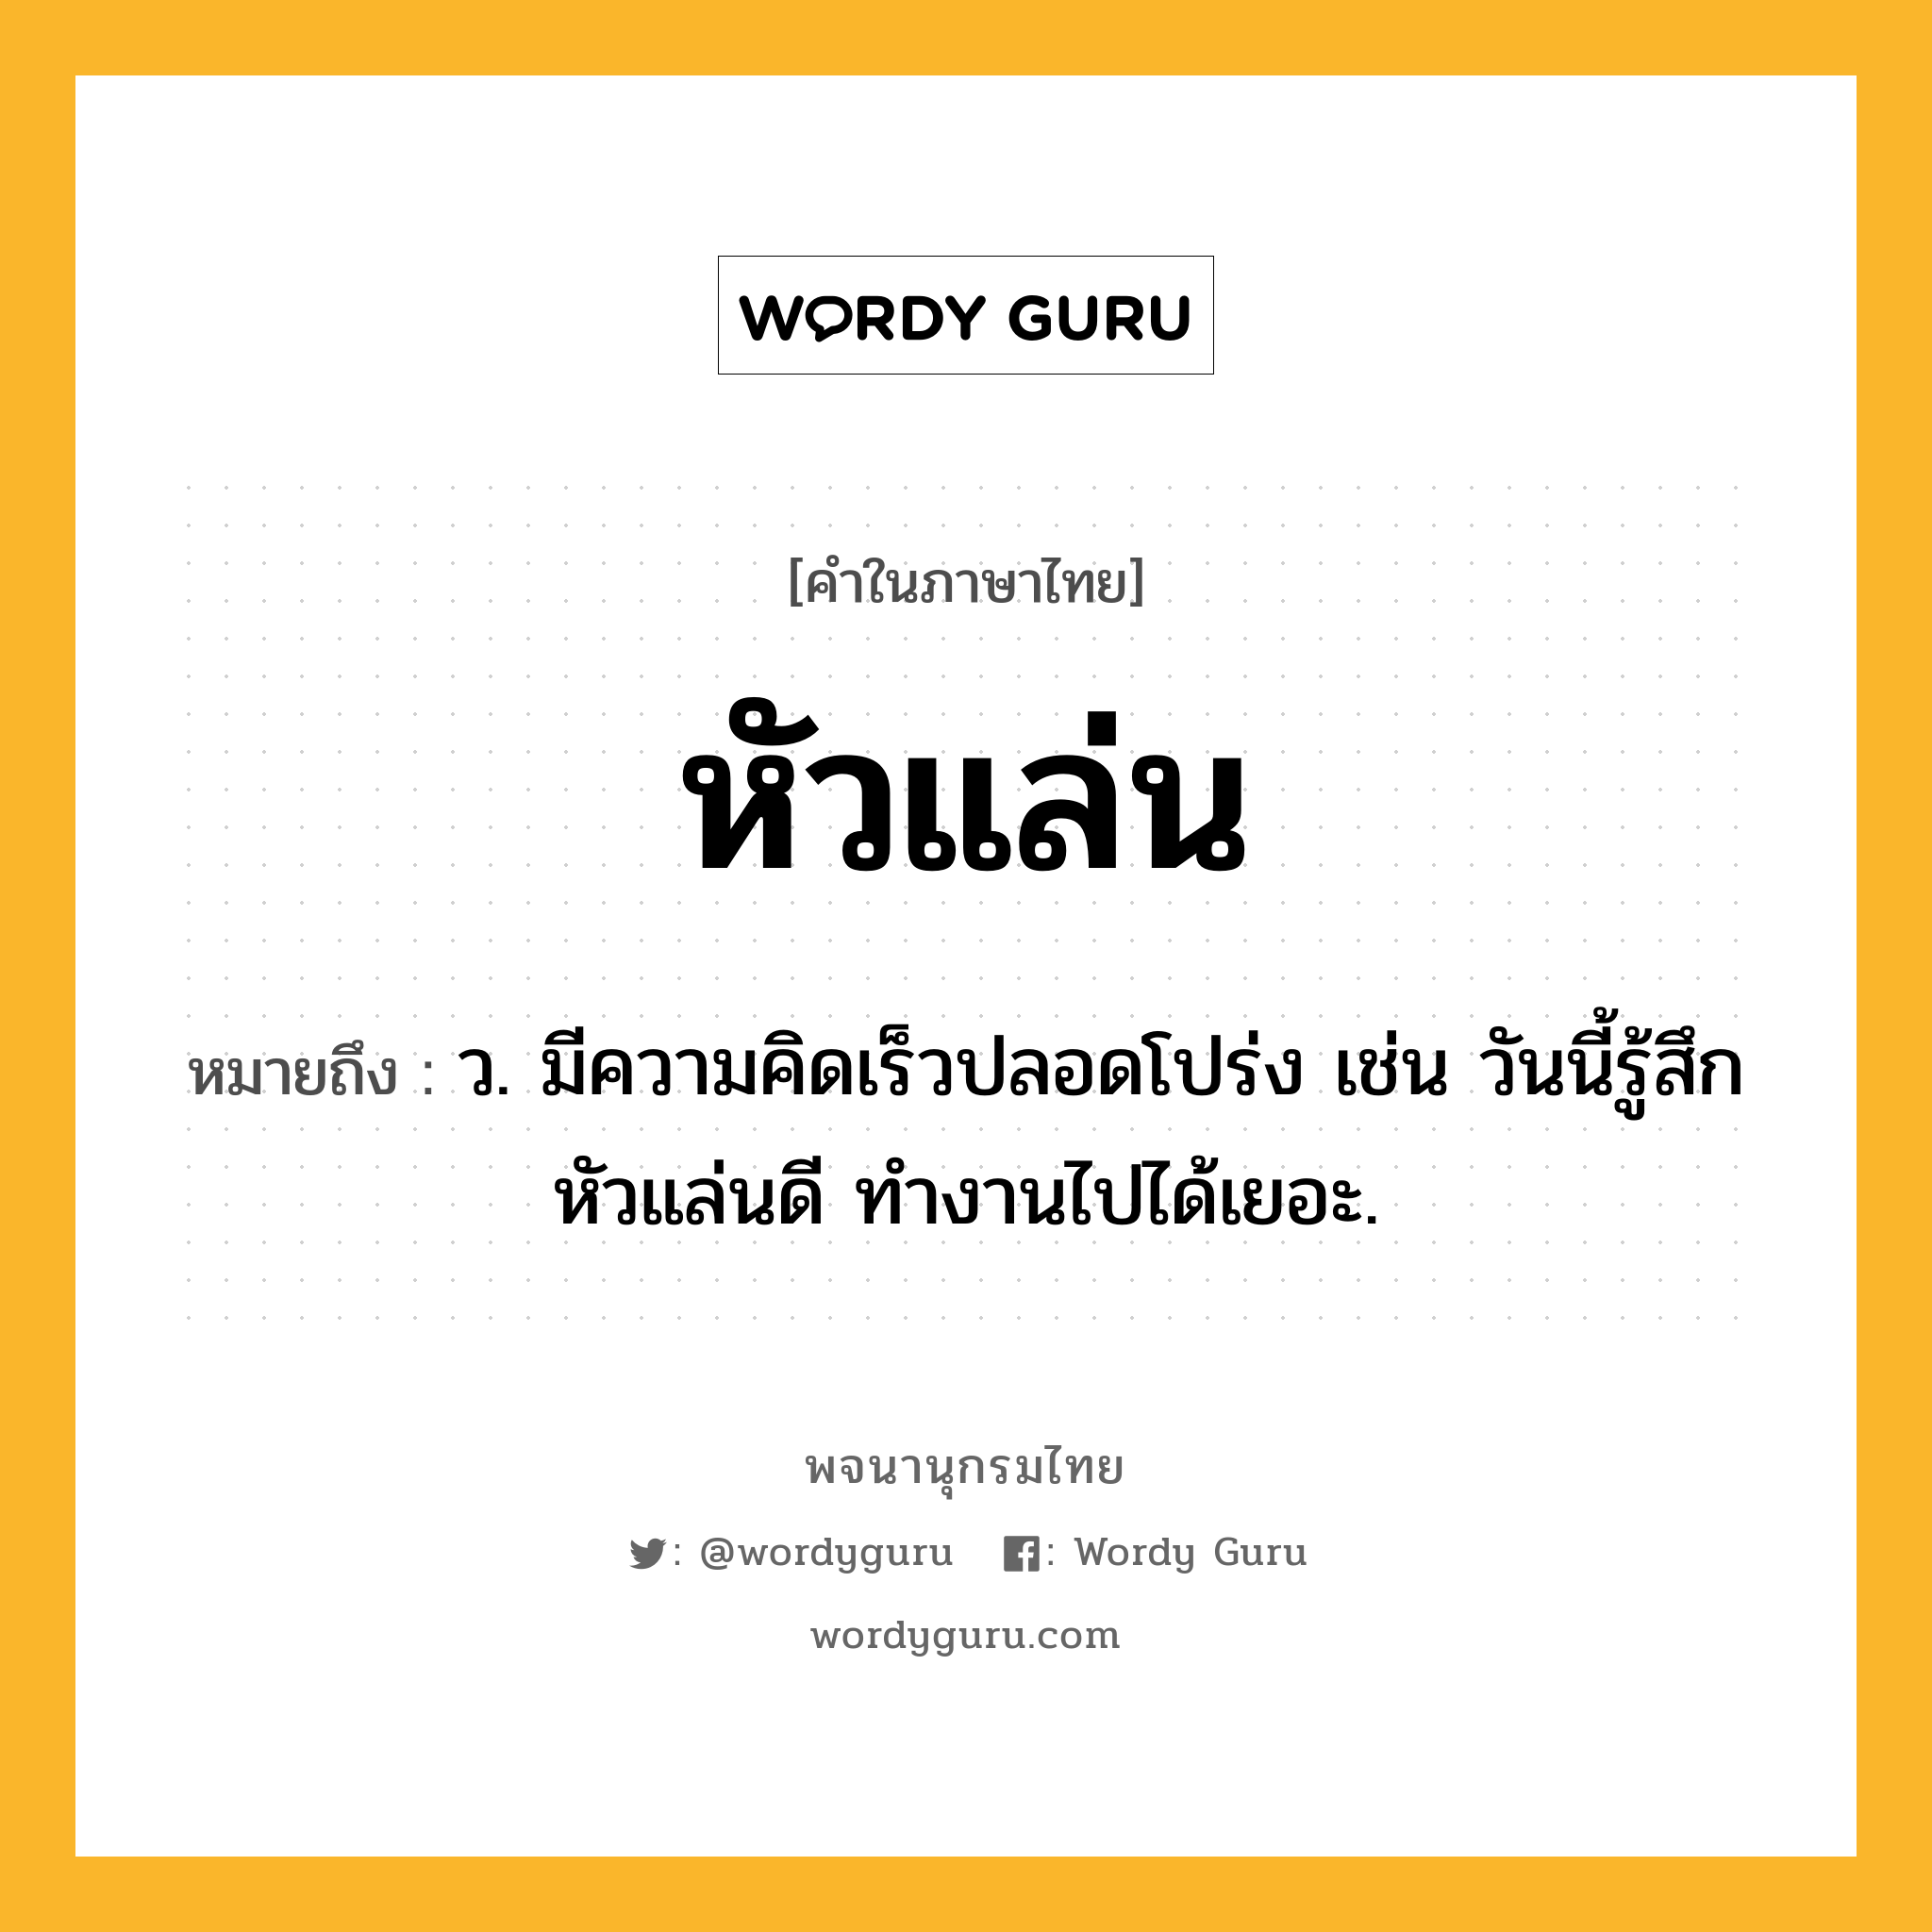 หัวแล่น หมายถึงอะไร?, คำในภาษาไทย หัวแล่น หมายถึง ว. มีความคิดเร็วปลอดโปร่ง เช่น วันนี้รู้สึกหัวแล่นดี ทำงานไปได้เยอะ.